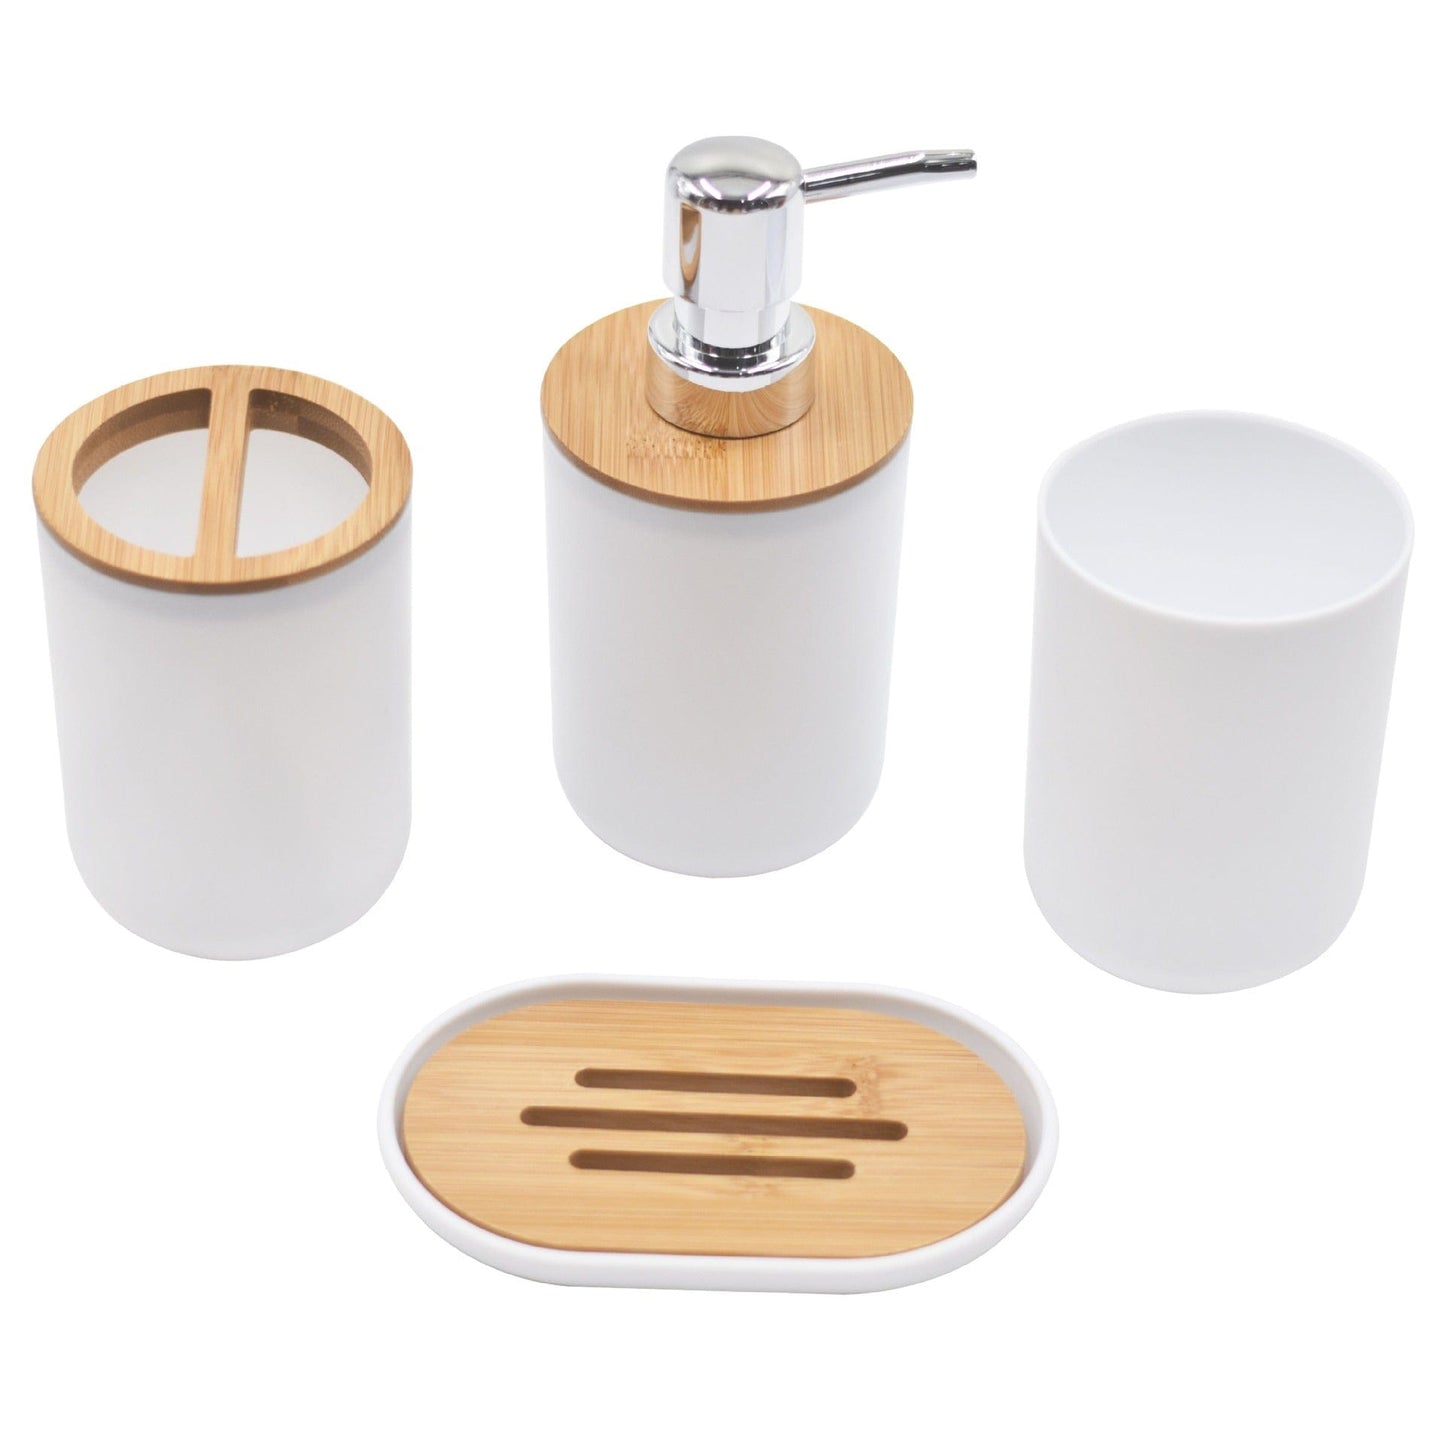 Light Luxury plastic and Wood Bathroom Set